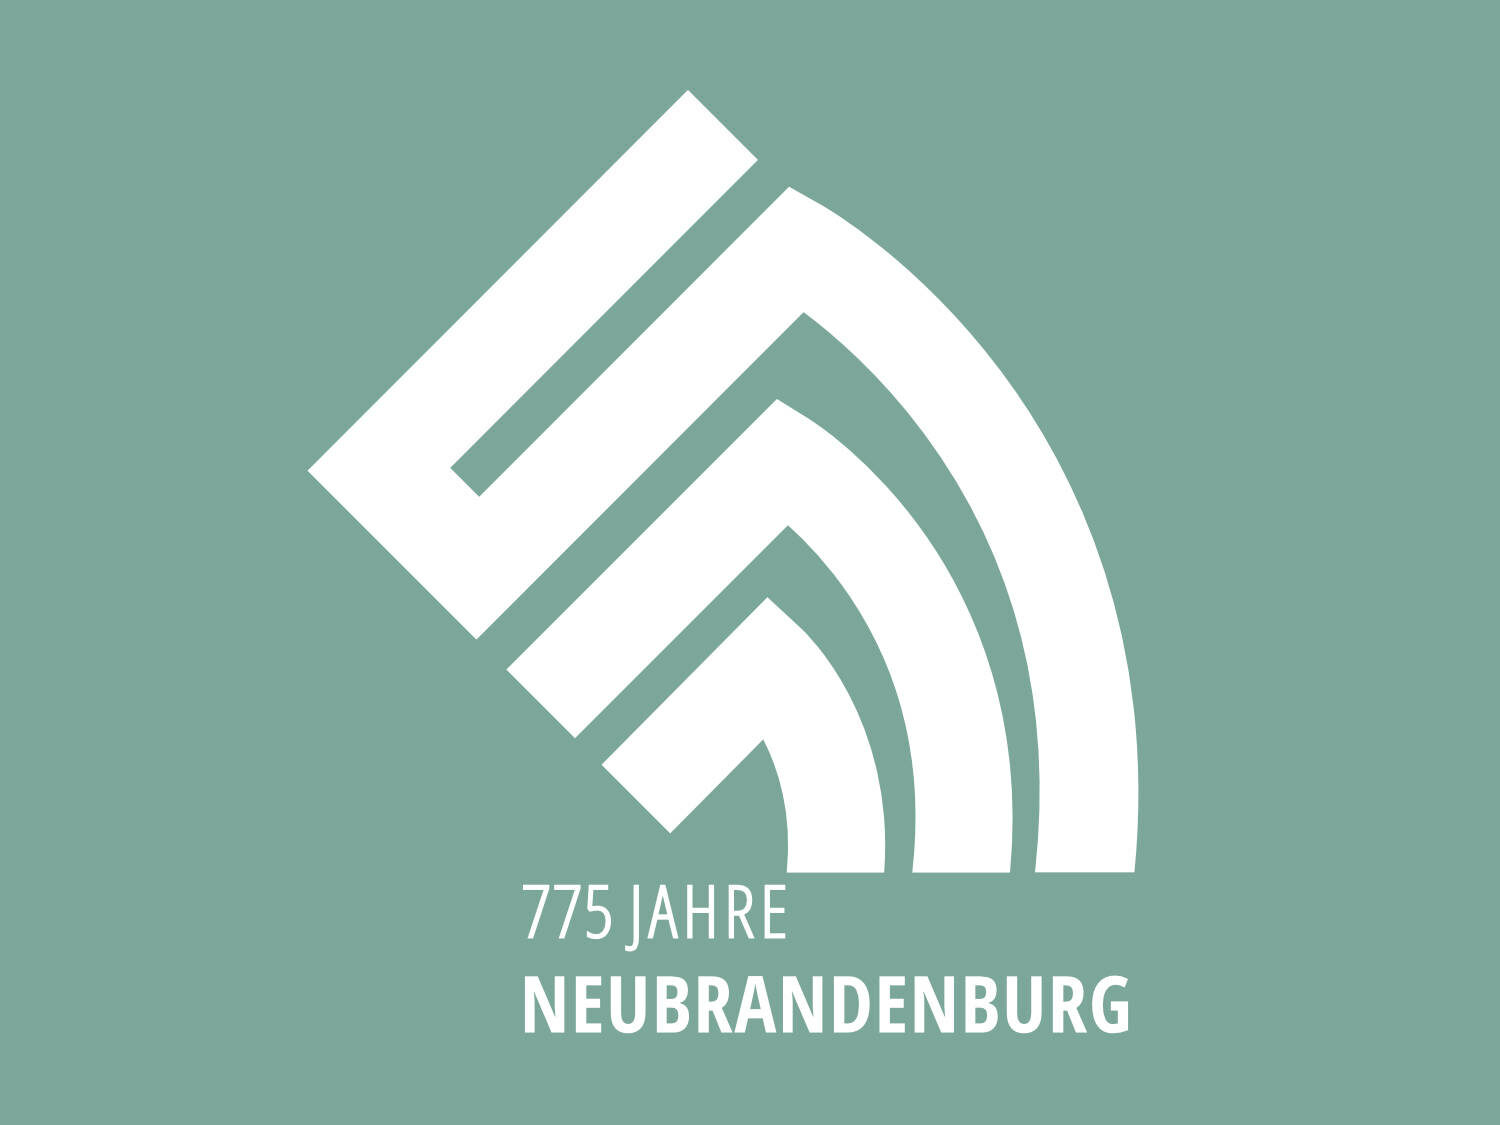 775 Jahre Neubrandenburg Jubiläumslogo, Quelle: Stadtverwaltung Neubrandenburg